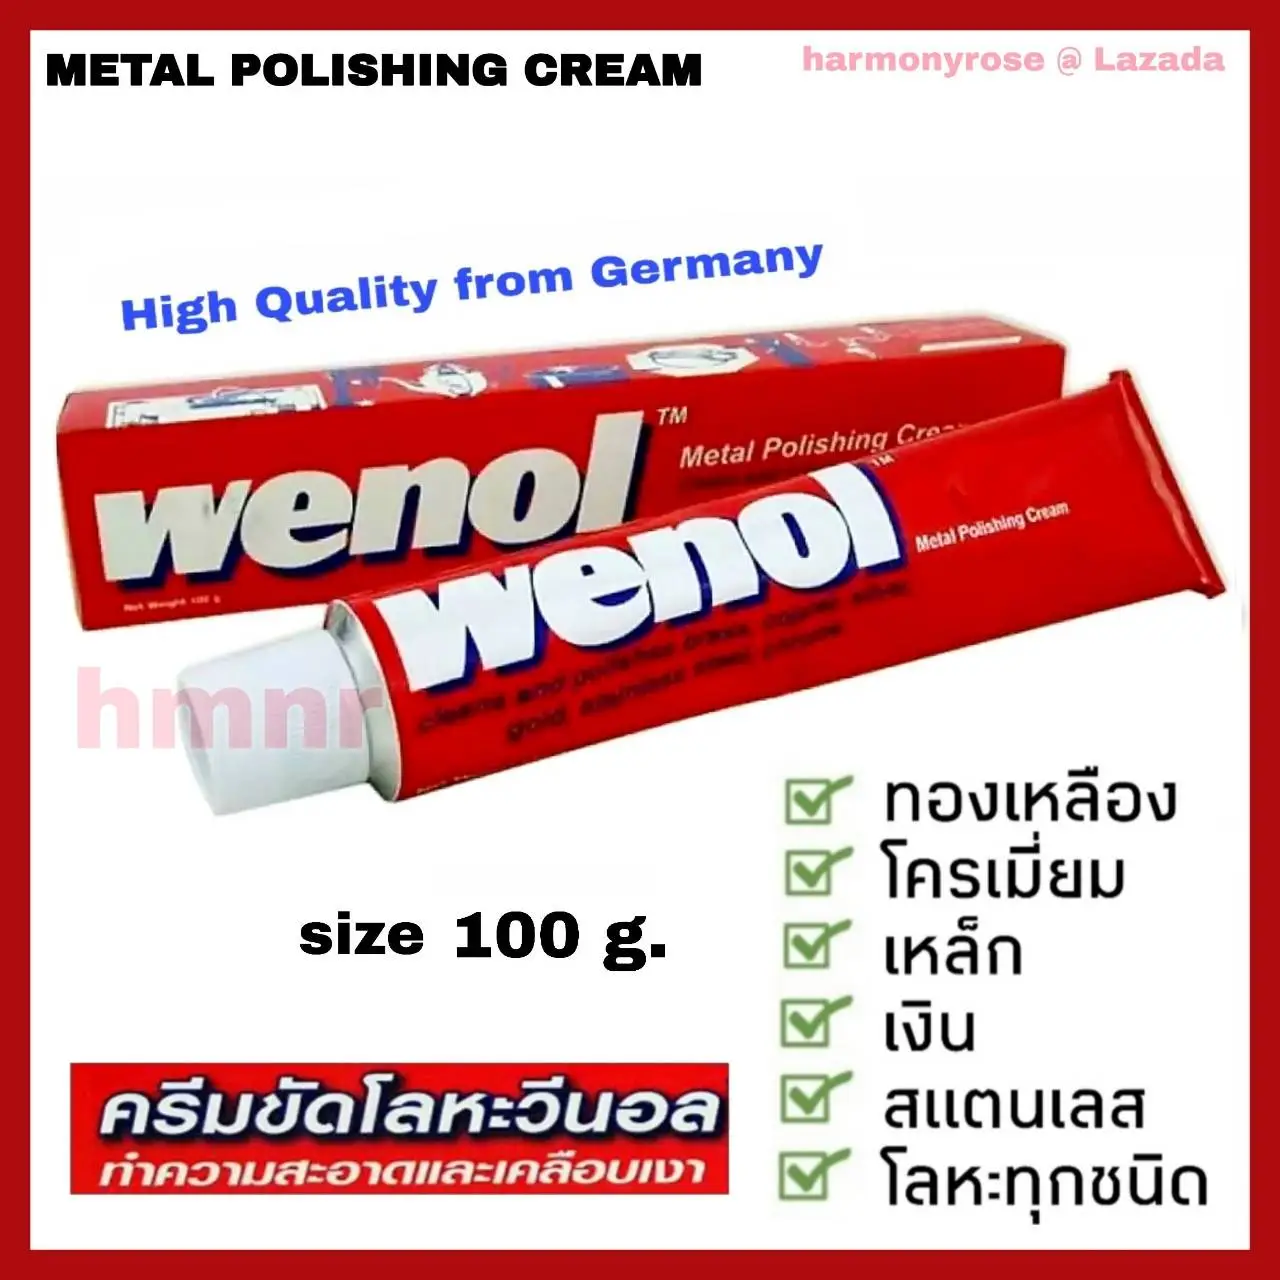 wenol ครีมขัดโลหะวีนอล น้ำยาขัดเงา ยาขัดโลหะ ขนาด 100 กรัม ครีมขัดอเนกประสงค์จากเยอรมัน